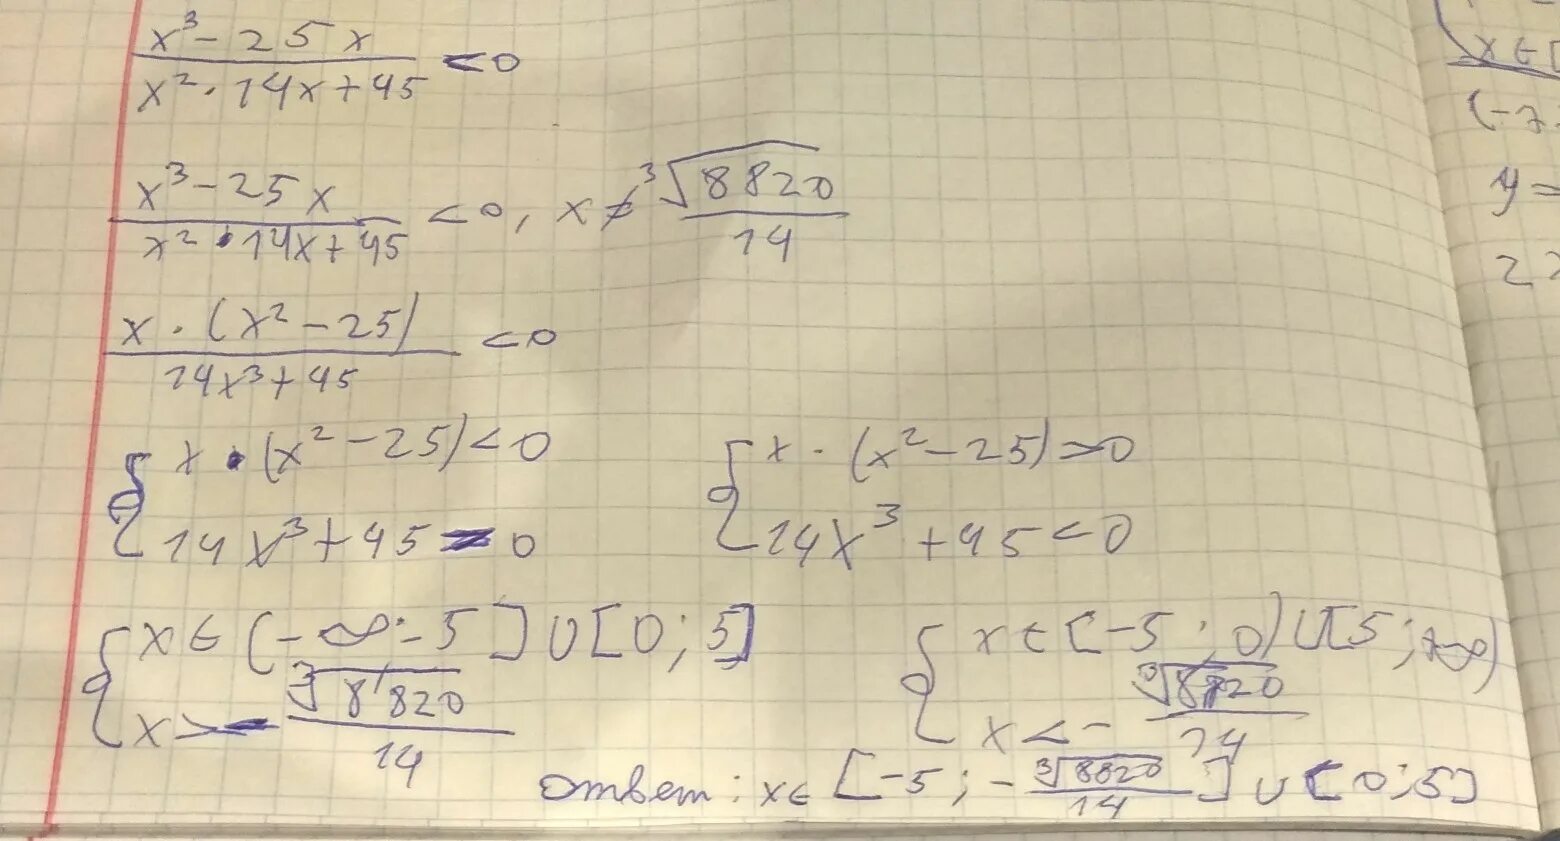 5x 2 5. X 2 2x 1 x-2 2/x-3 меньше или равно x. (X-2)^5 +(4-X)^5=2. (2x-5)^2-4x^2. (2-X)²-X(X+1,5)=4.